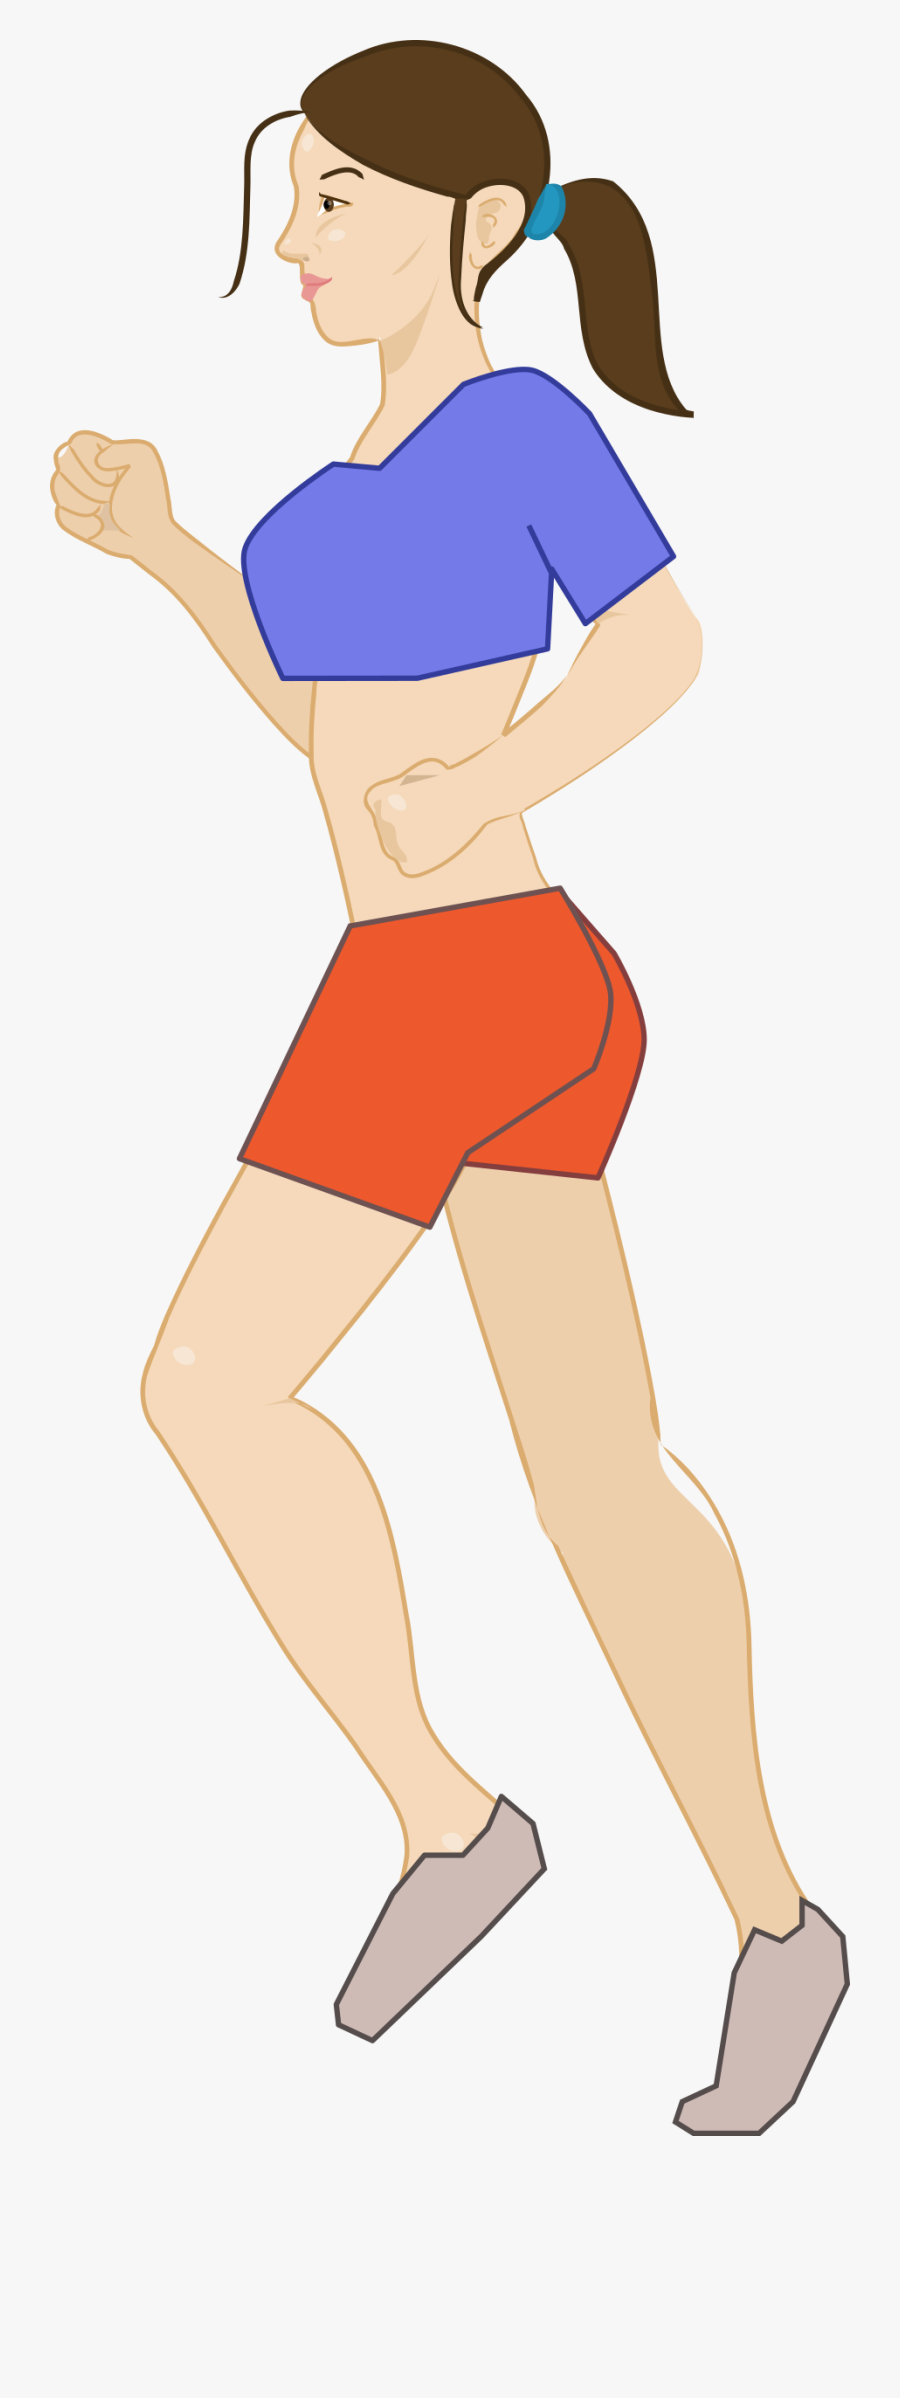 Woman Jogging Clipart - Woman Jogging Cartoon Png, Transparent Clipart